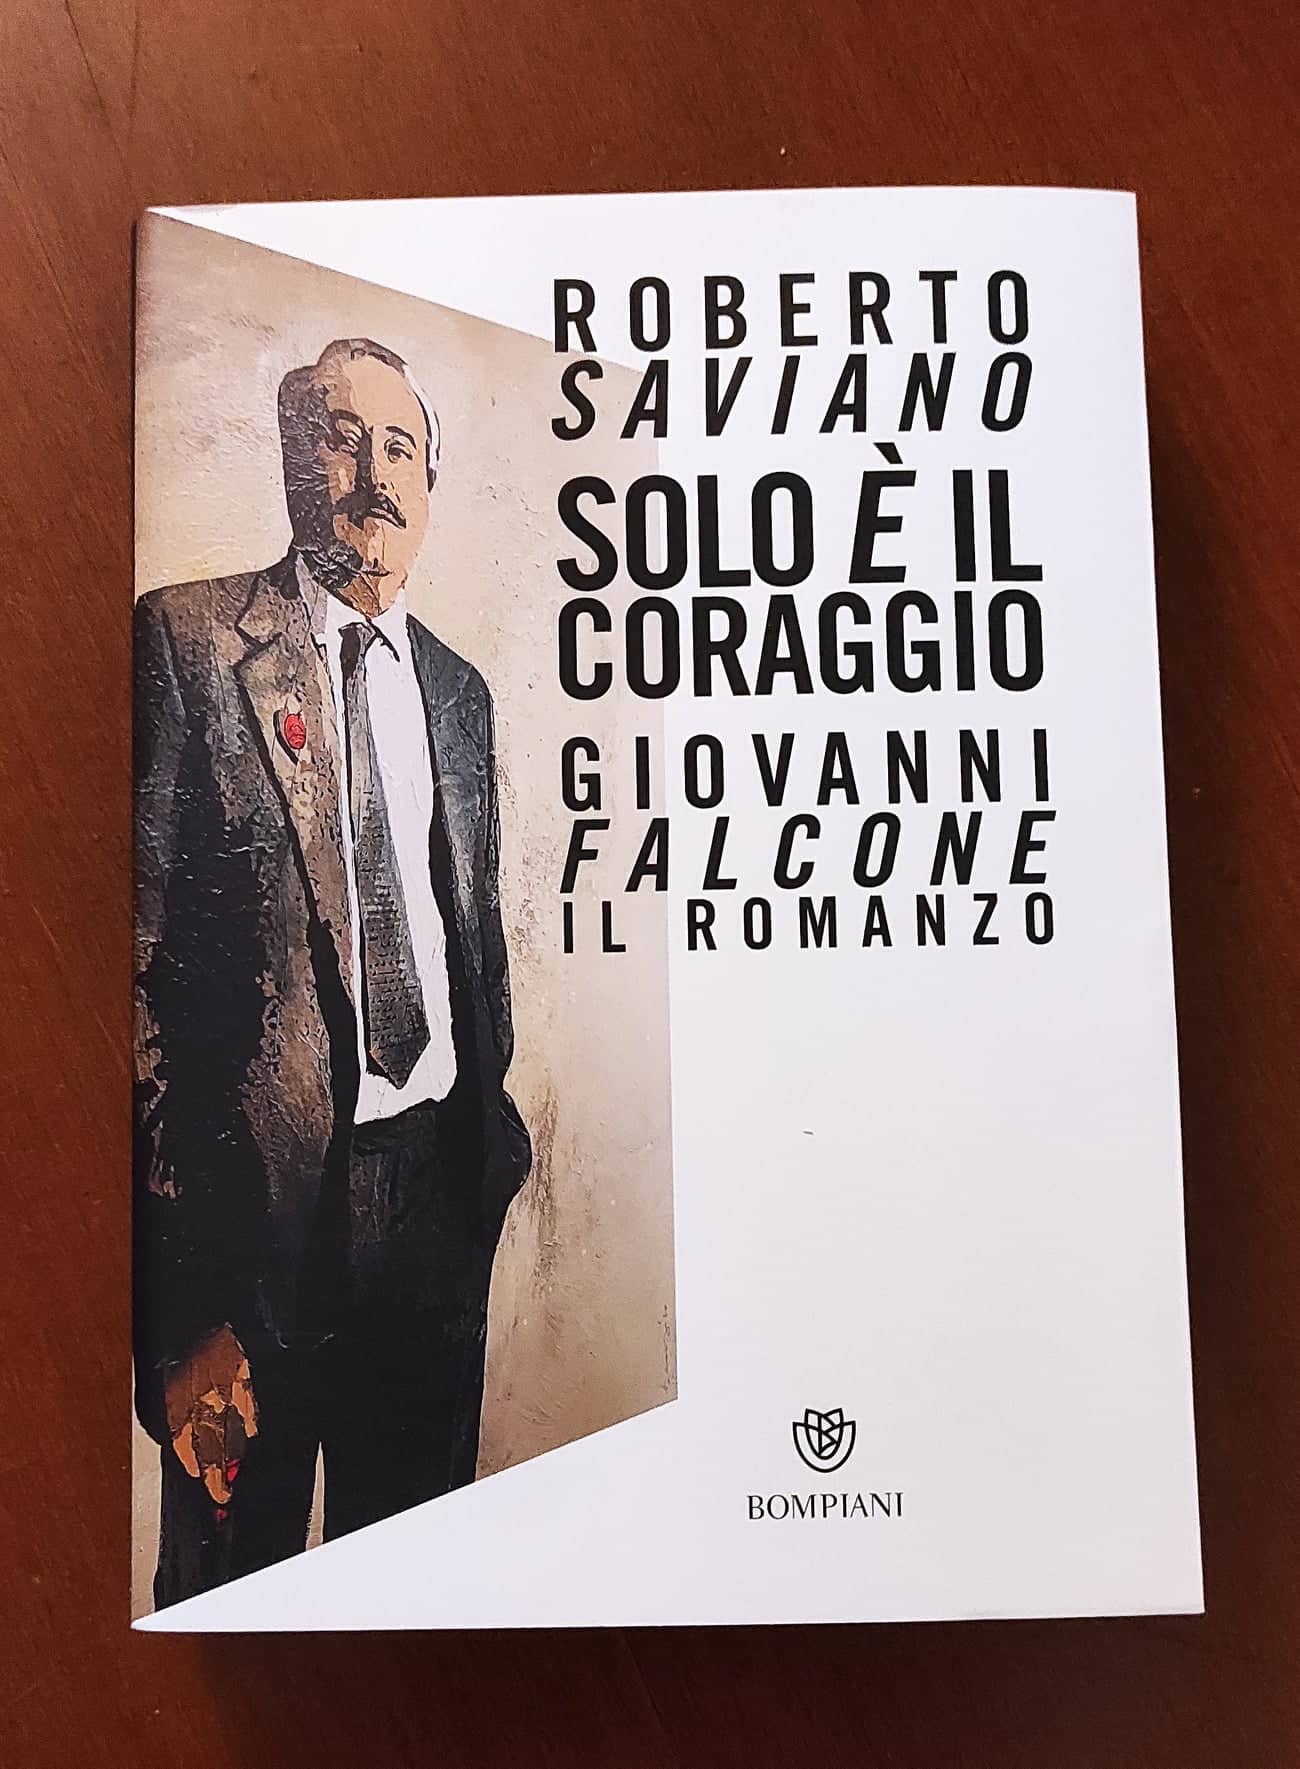 “Solo è il coraggio. Giovanni Falcone” – Roberto Saviano